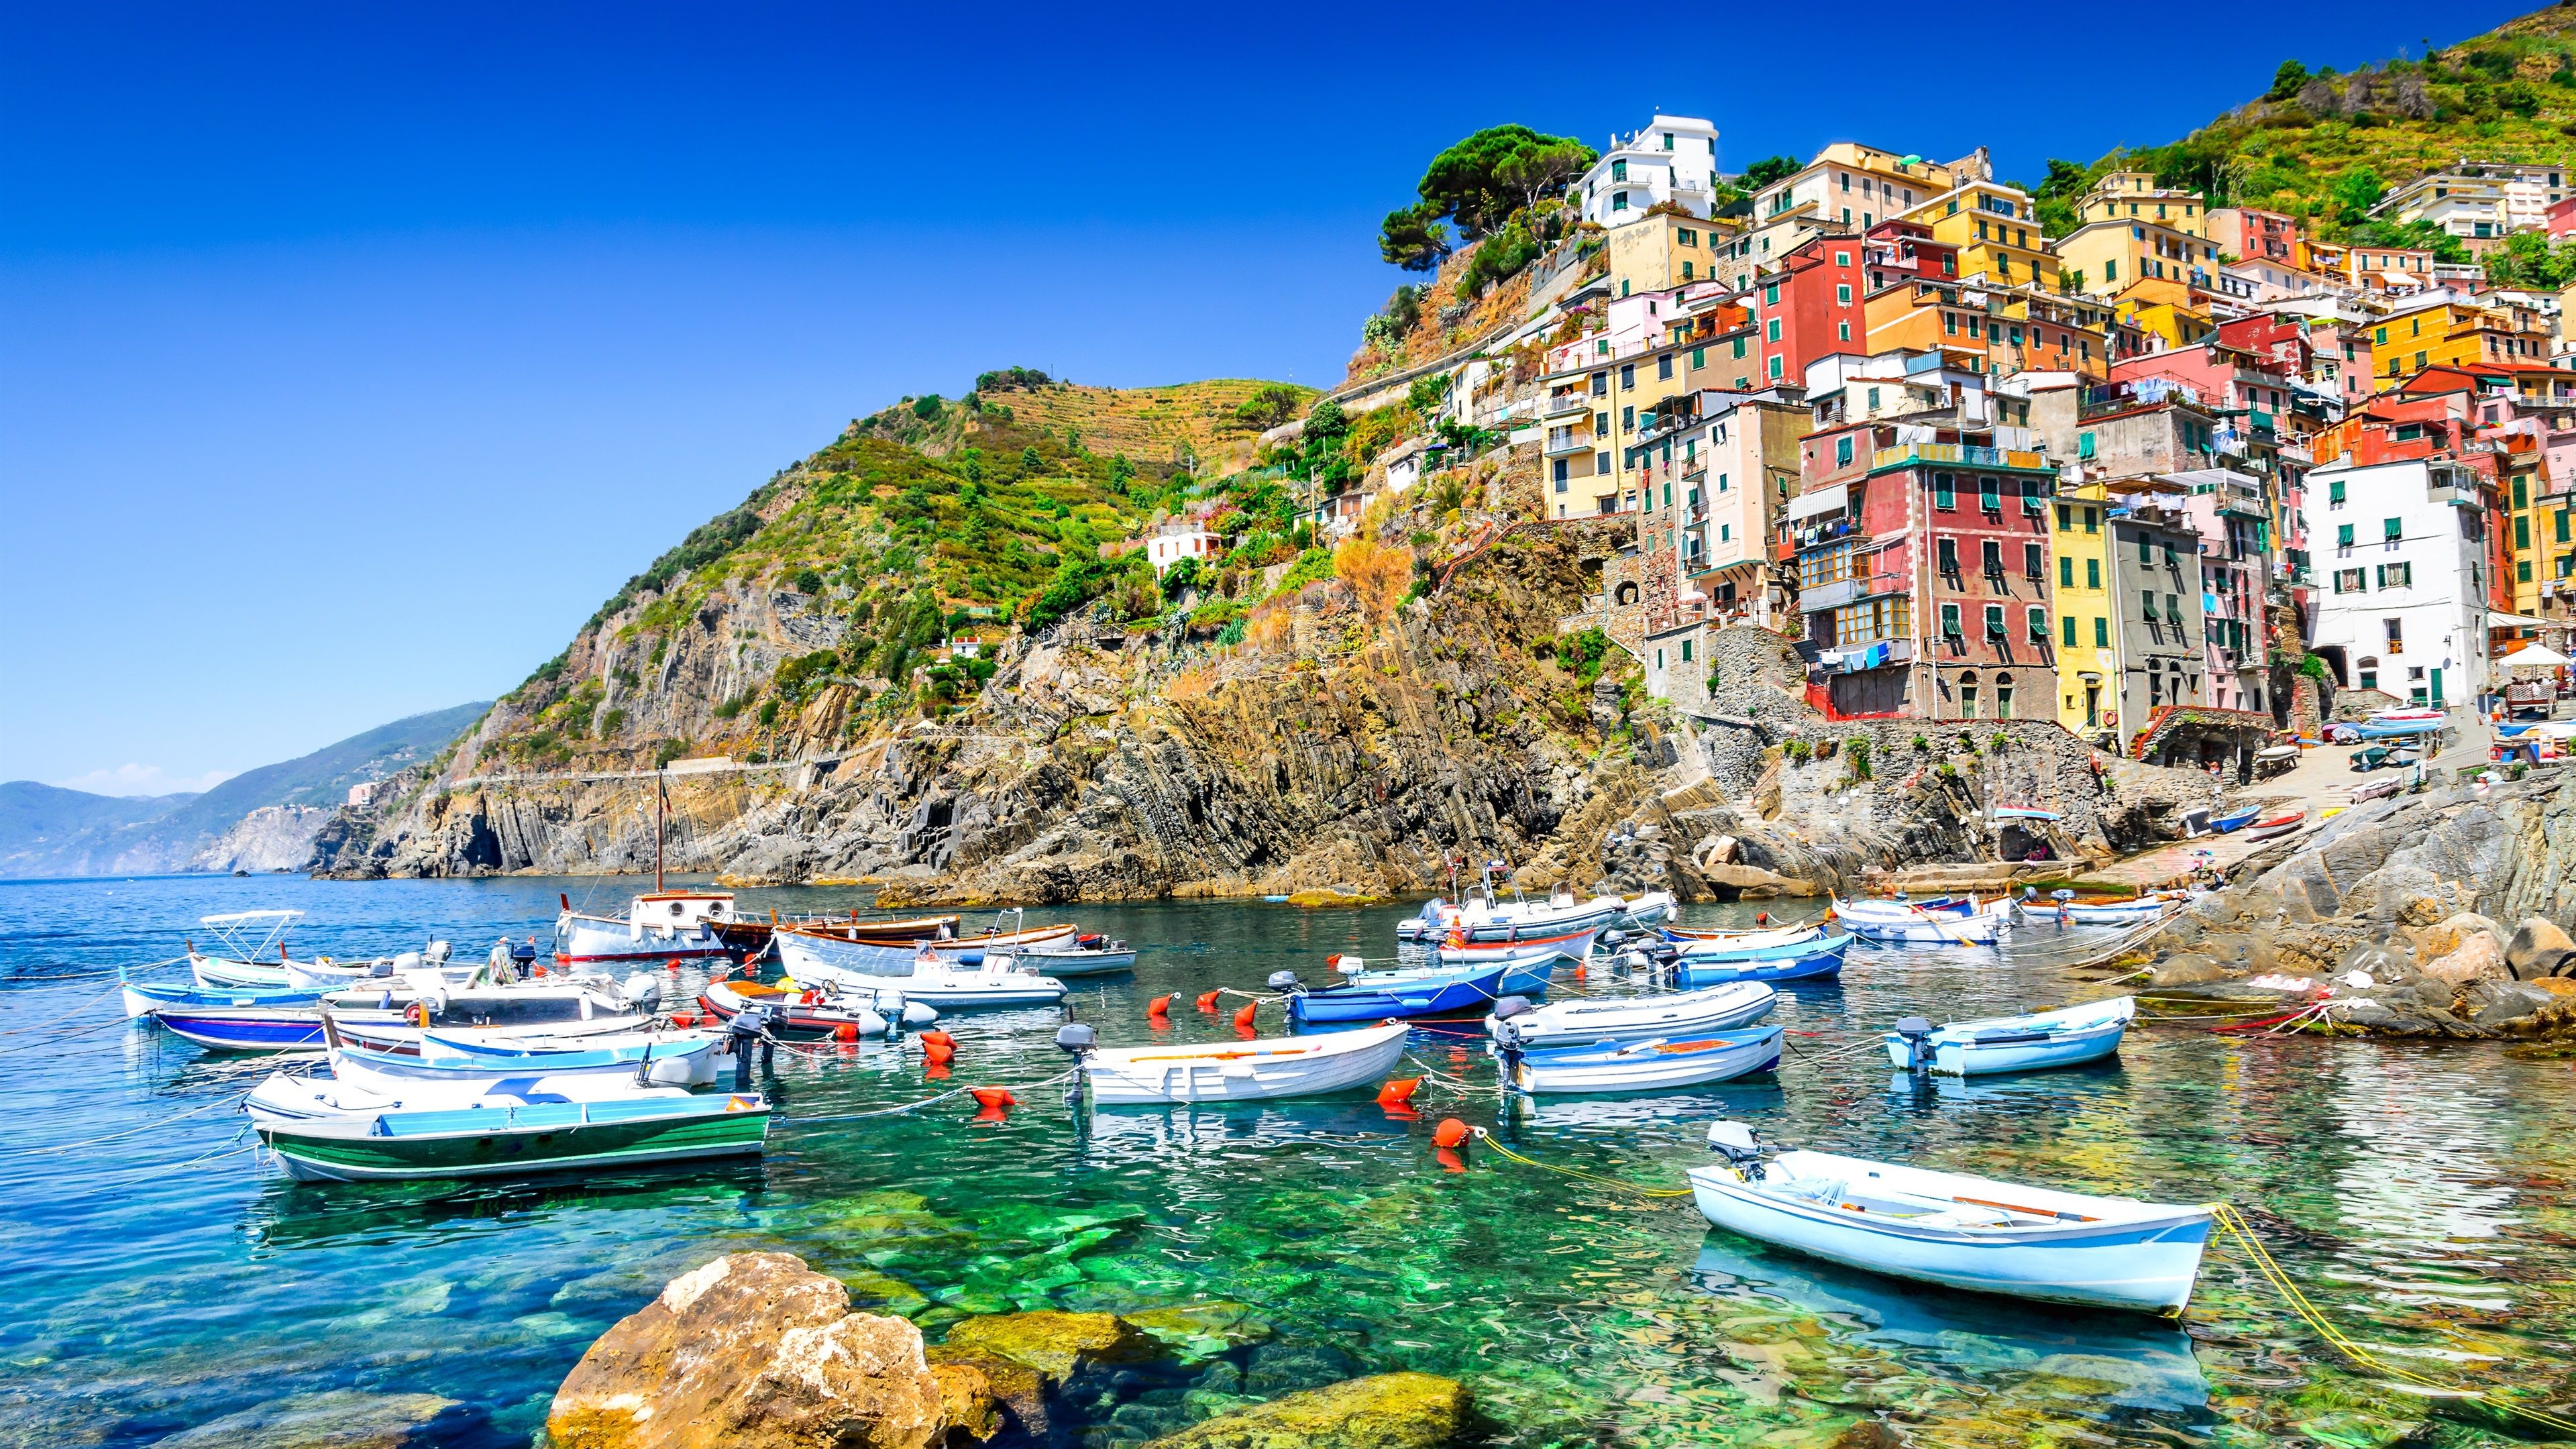 Wallpaper Italy, Riomaggiore, sea, coast, boats, houses 3840x2160 UHD 4K Picture, Image